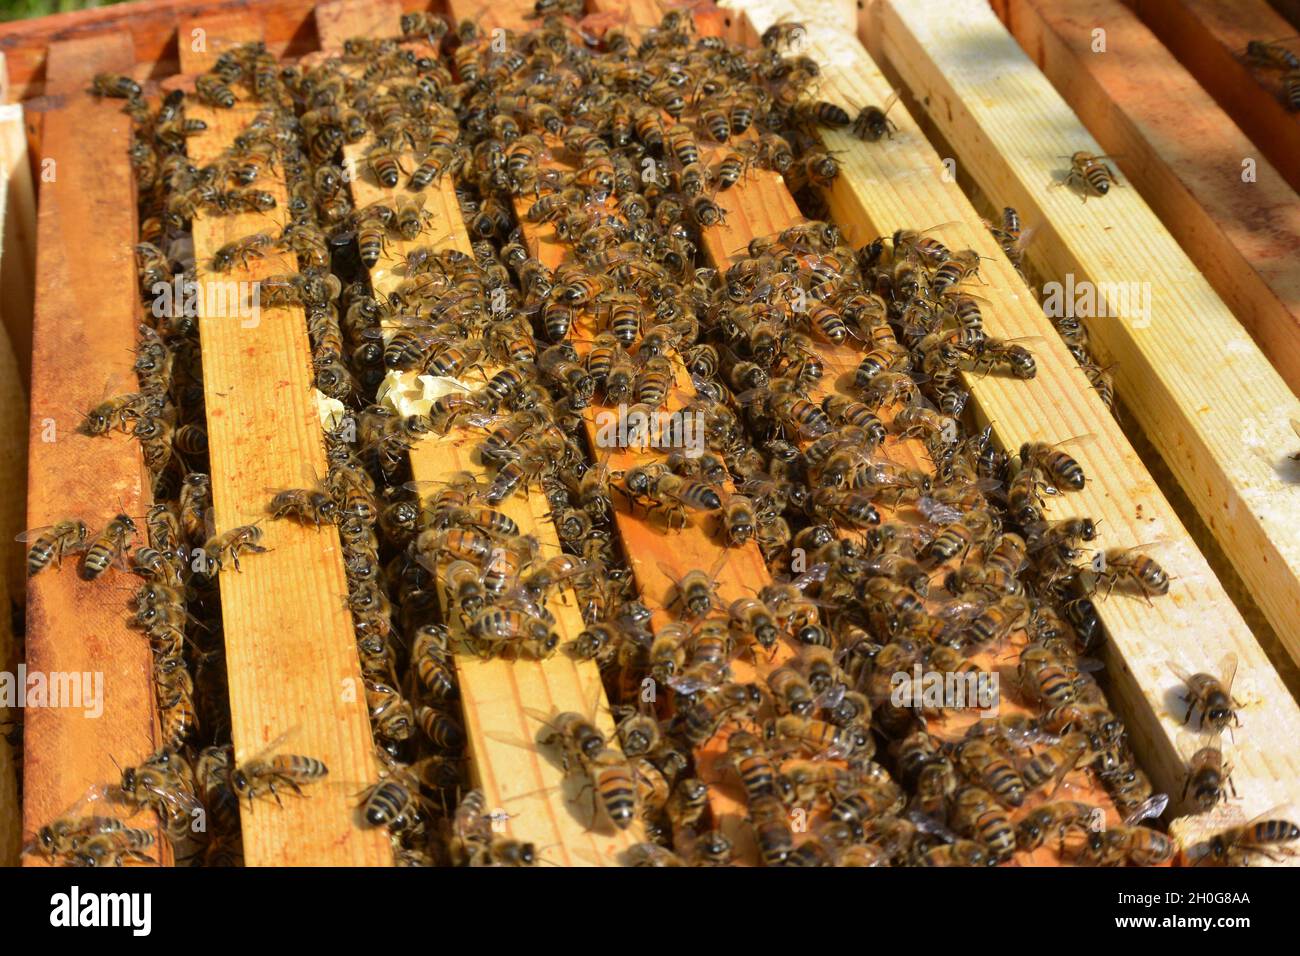 Soulever le couvercle d'une ruche pour voir les abeilles ouvrières (APIS mellifera) sur les bords et entre les cadres parallèles Banque D'Images